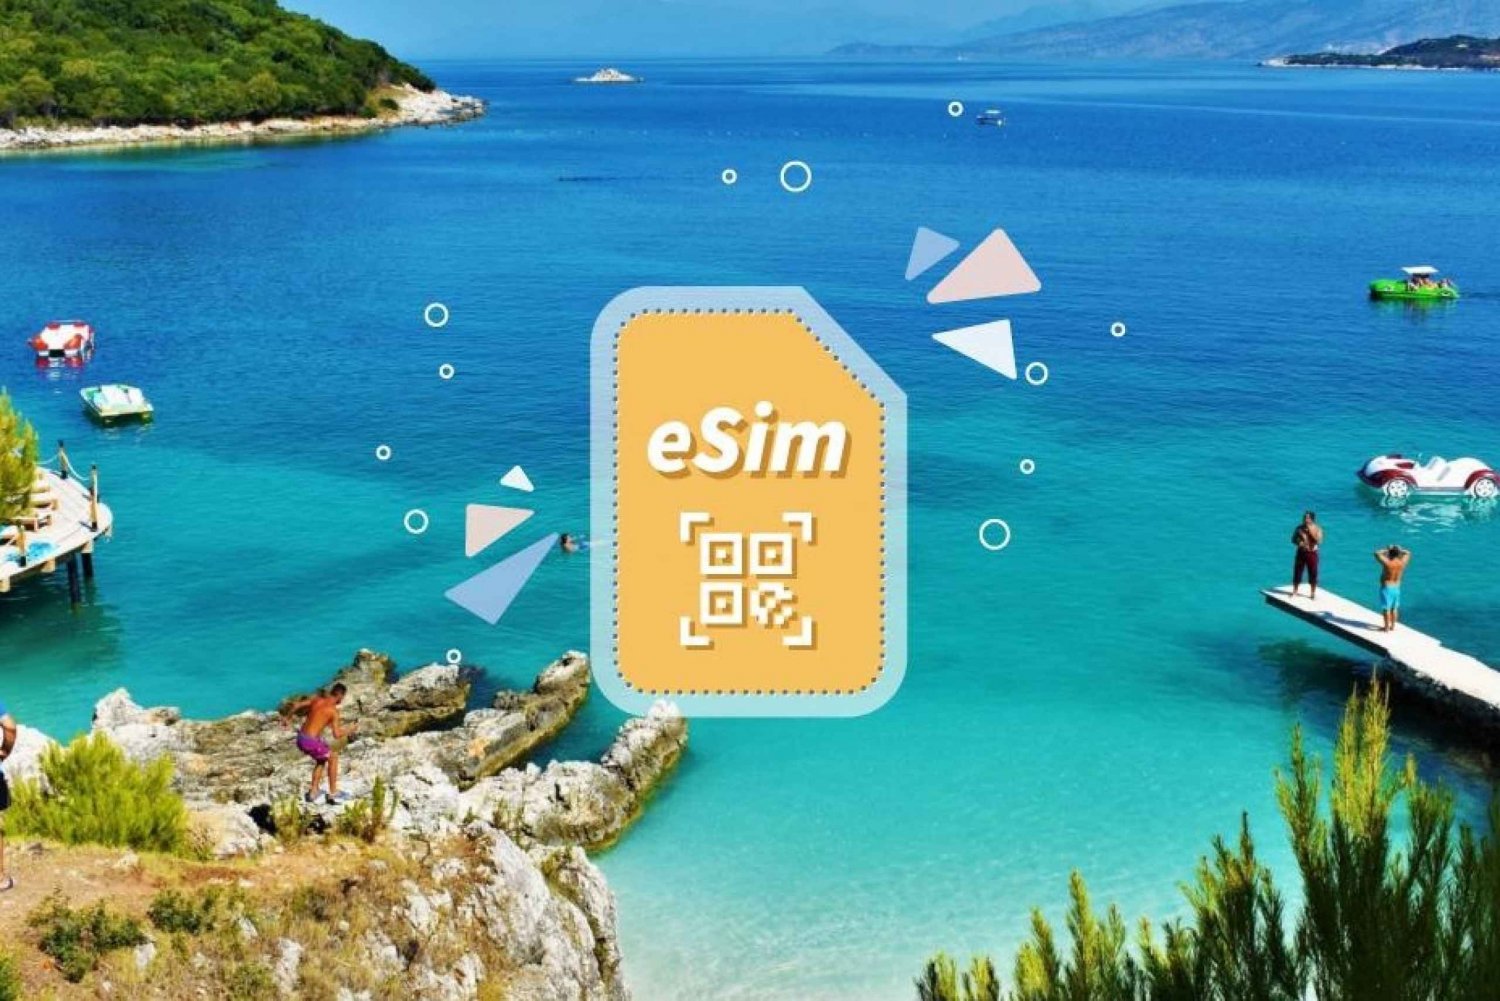 Albanië/Europa: eSim Mobiel Data Plan